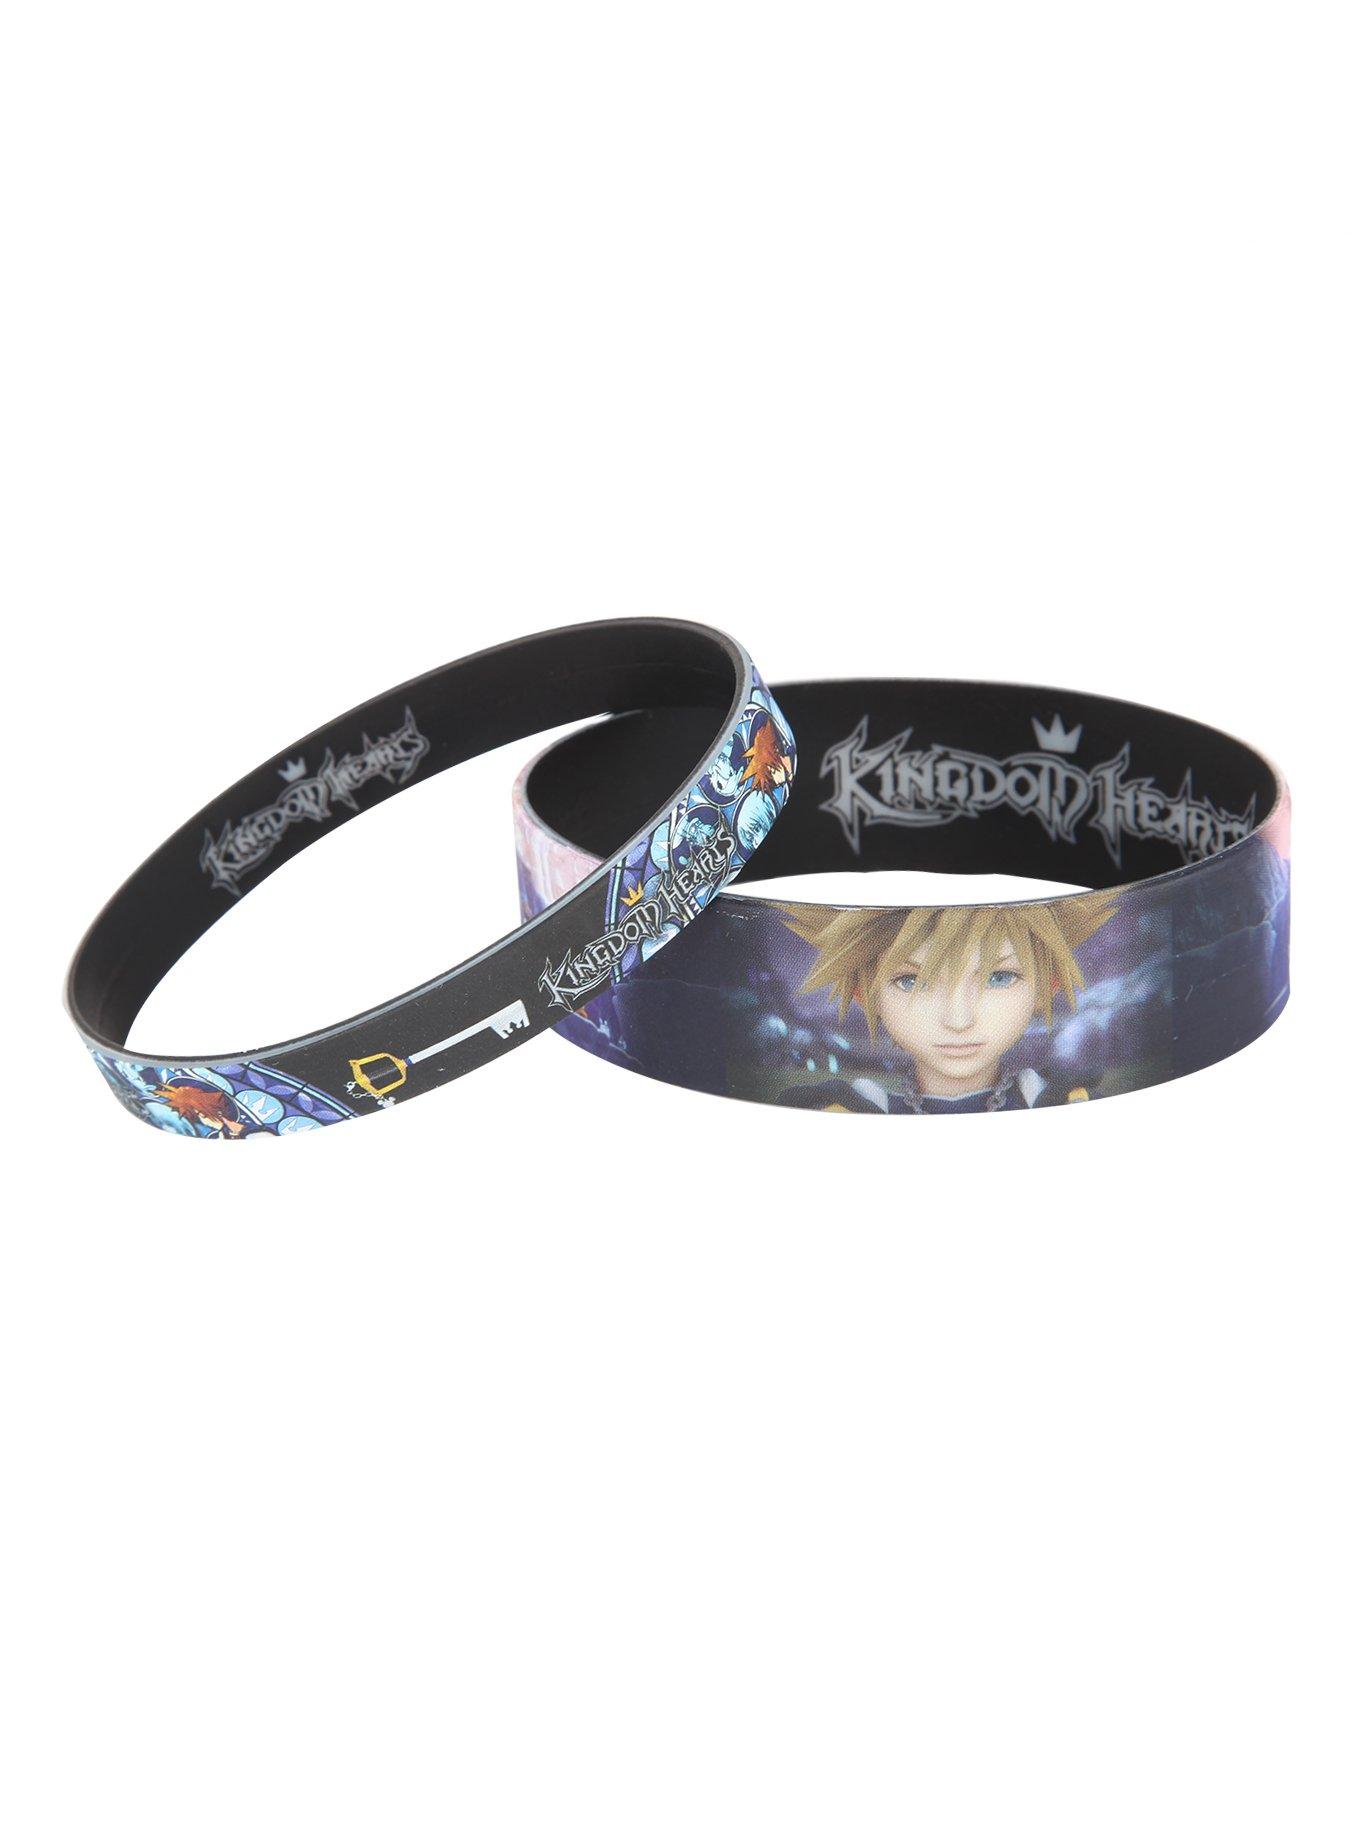 Disney Kingdom Hearts Rubber Bracelet 2 Pack, , hi-res